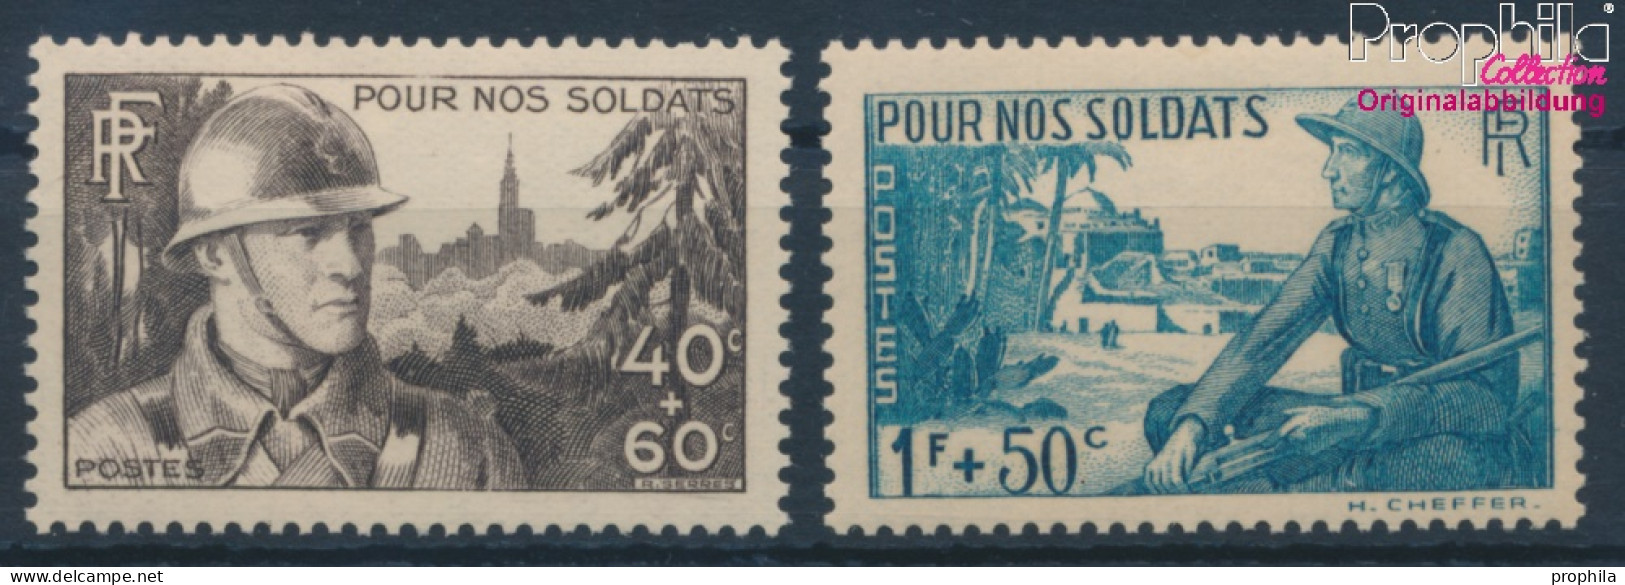 Frankreich 464-465 (kompl.Ausg.) Postfrisch 1940 Unsere Soldaten (10354726 - Neufs